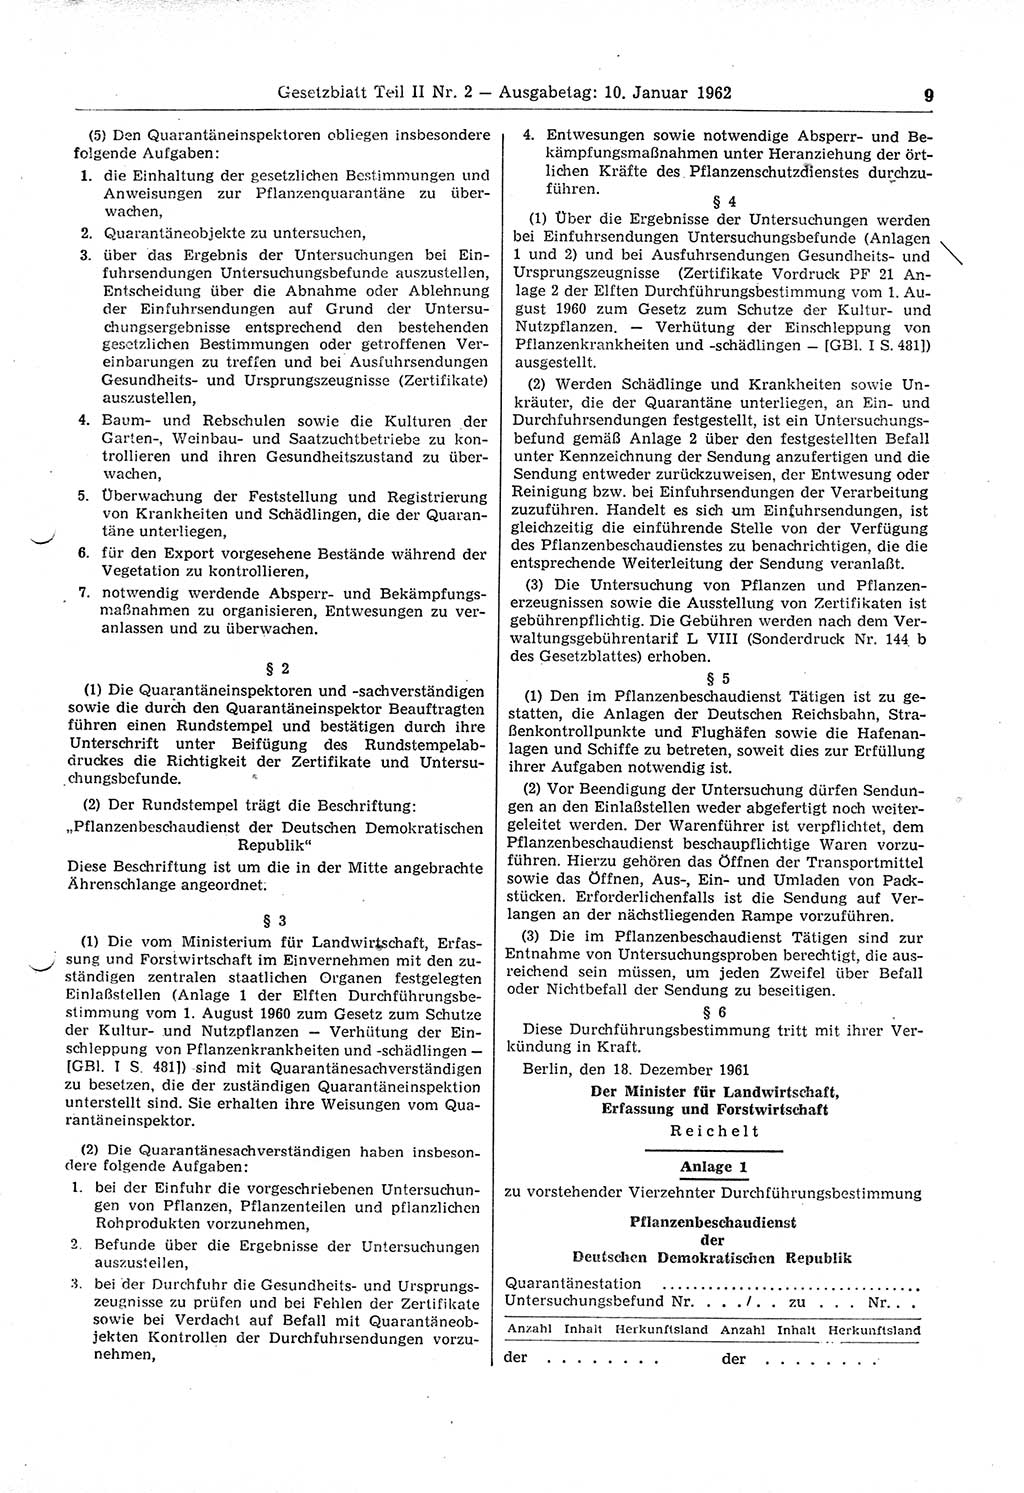 Gesetzblatt (GBl.) der Deutschen Demokratischen Republik (DDR) Teil ⅠⅠ 1962, Seite 9 (GBl. DDR ⅠⅠ 1962, S. 9)